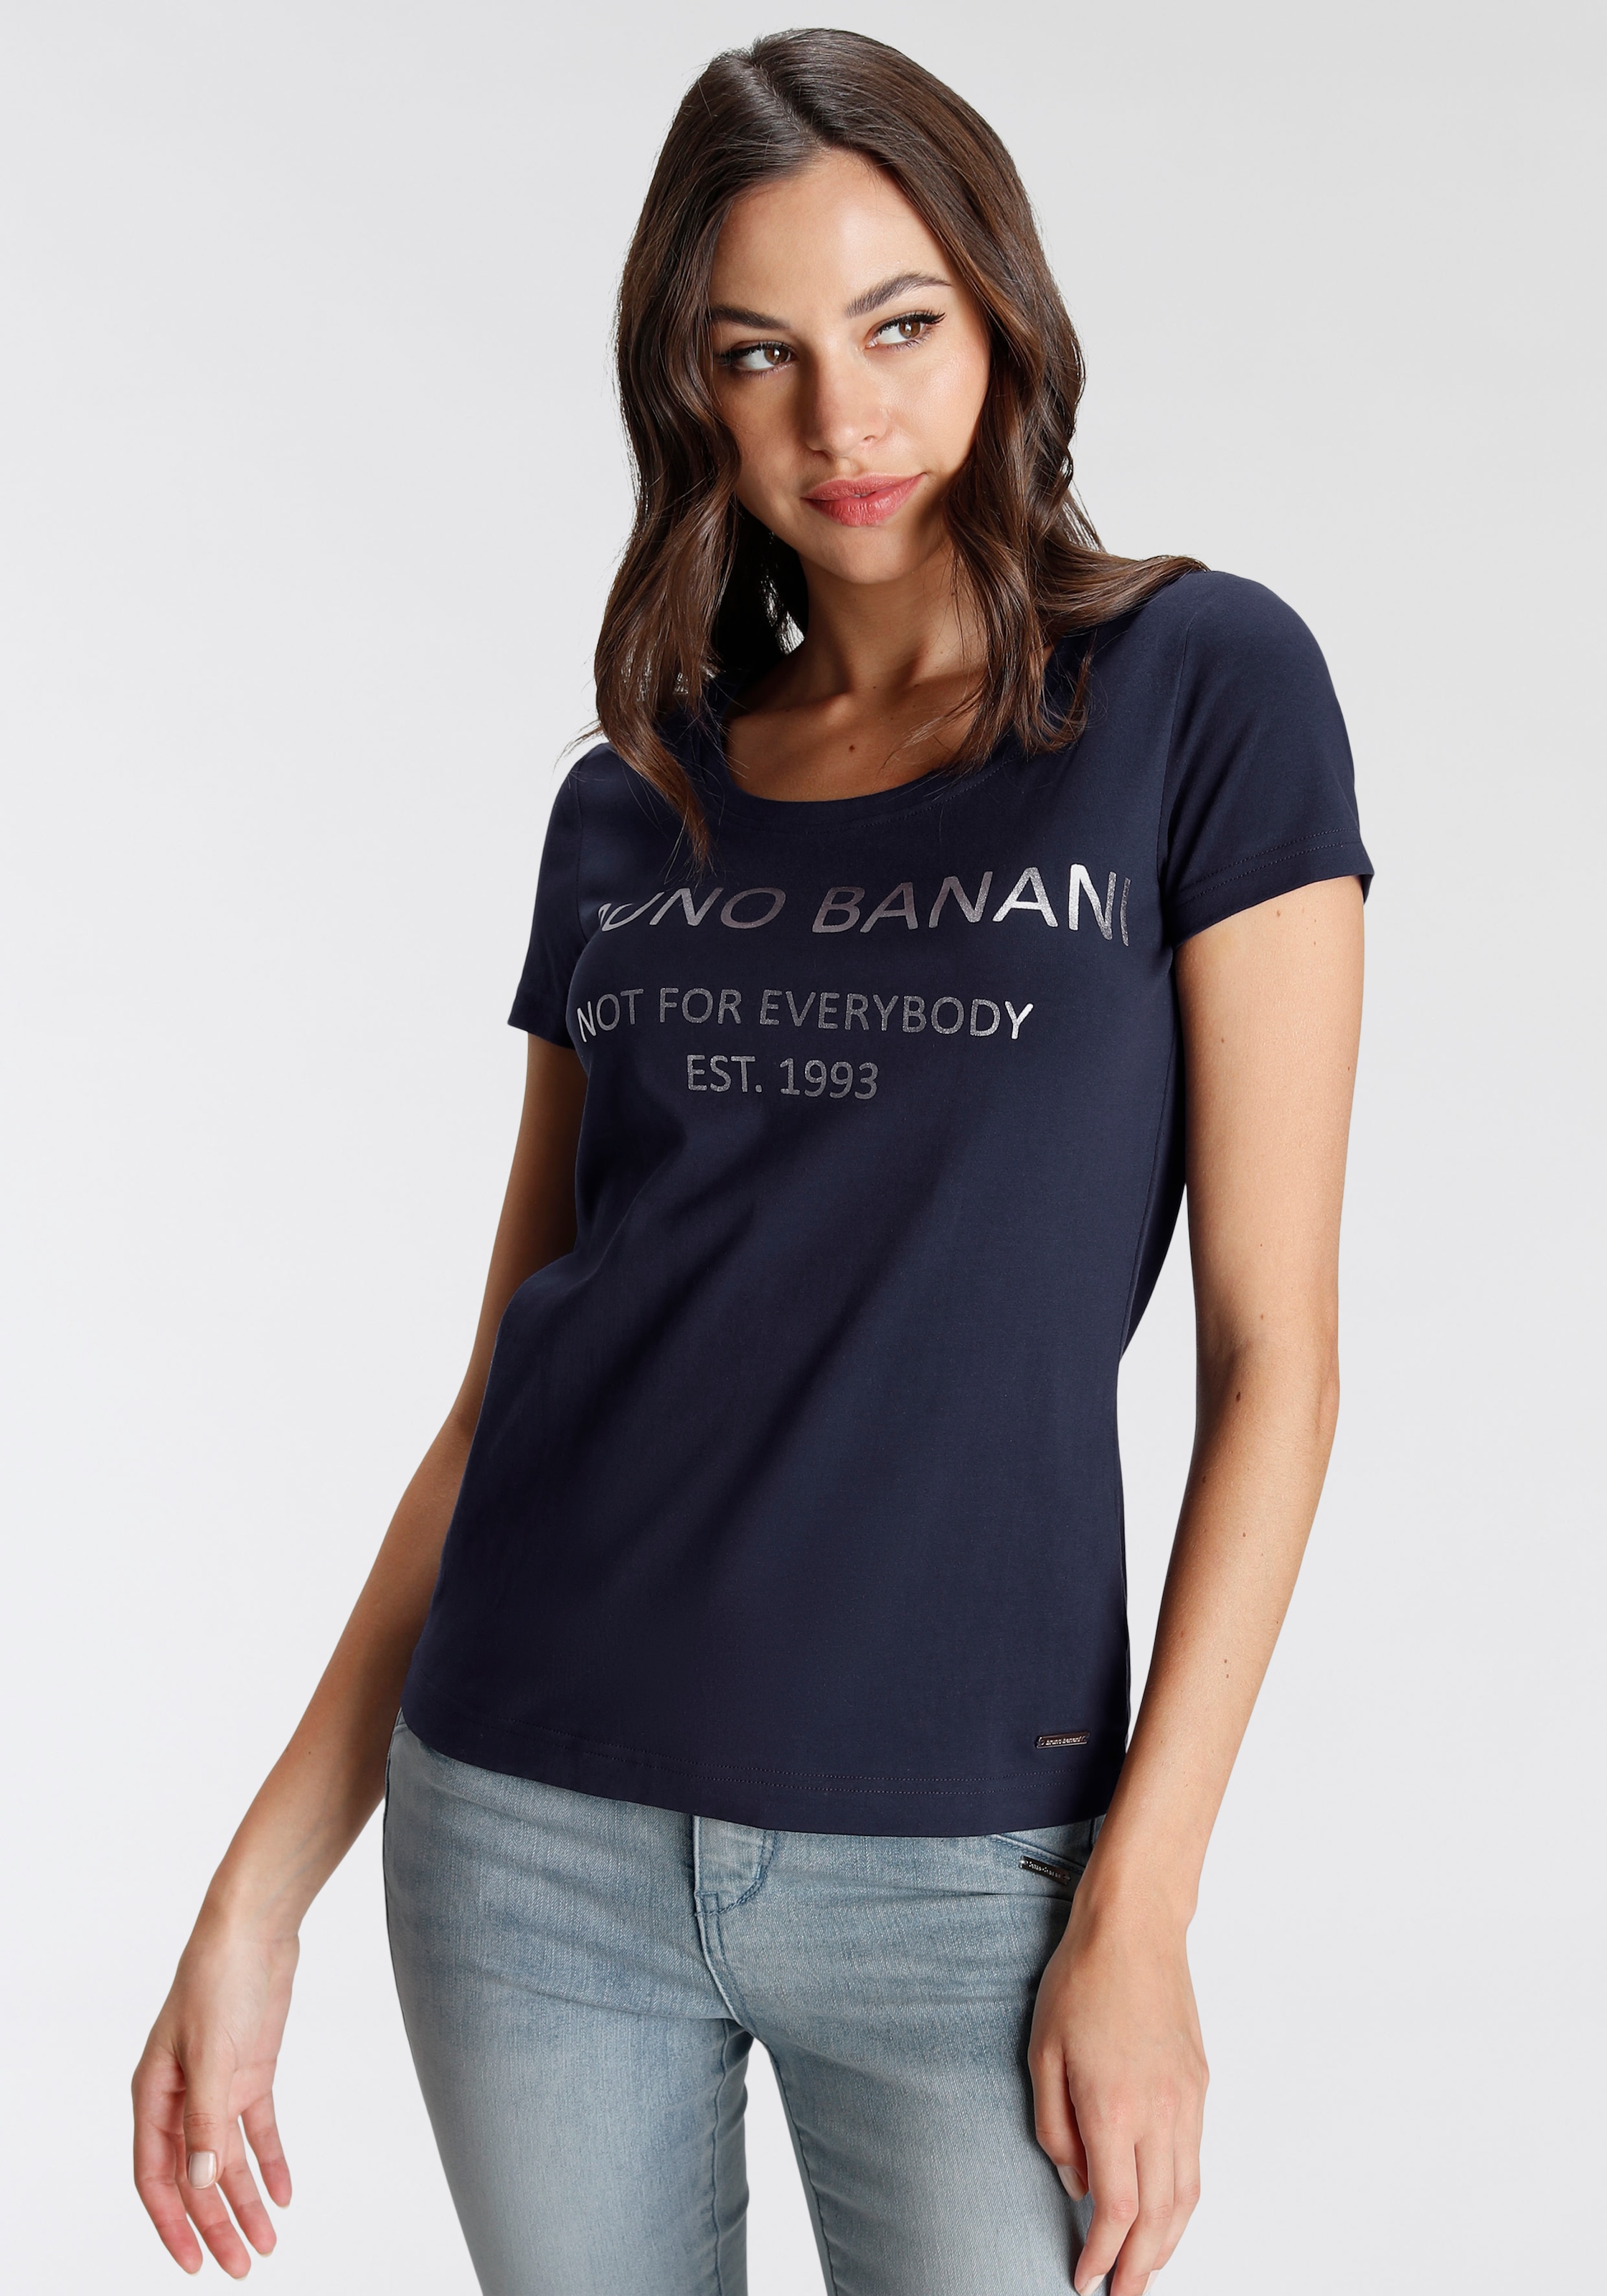 mit NEUE goldfarbenem bei kaufen Logodruck T-Shirt, Banani KOLLEKTION online OTTO Bruno